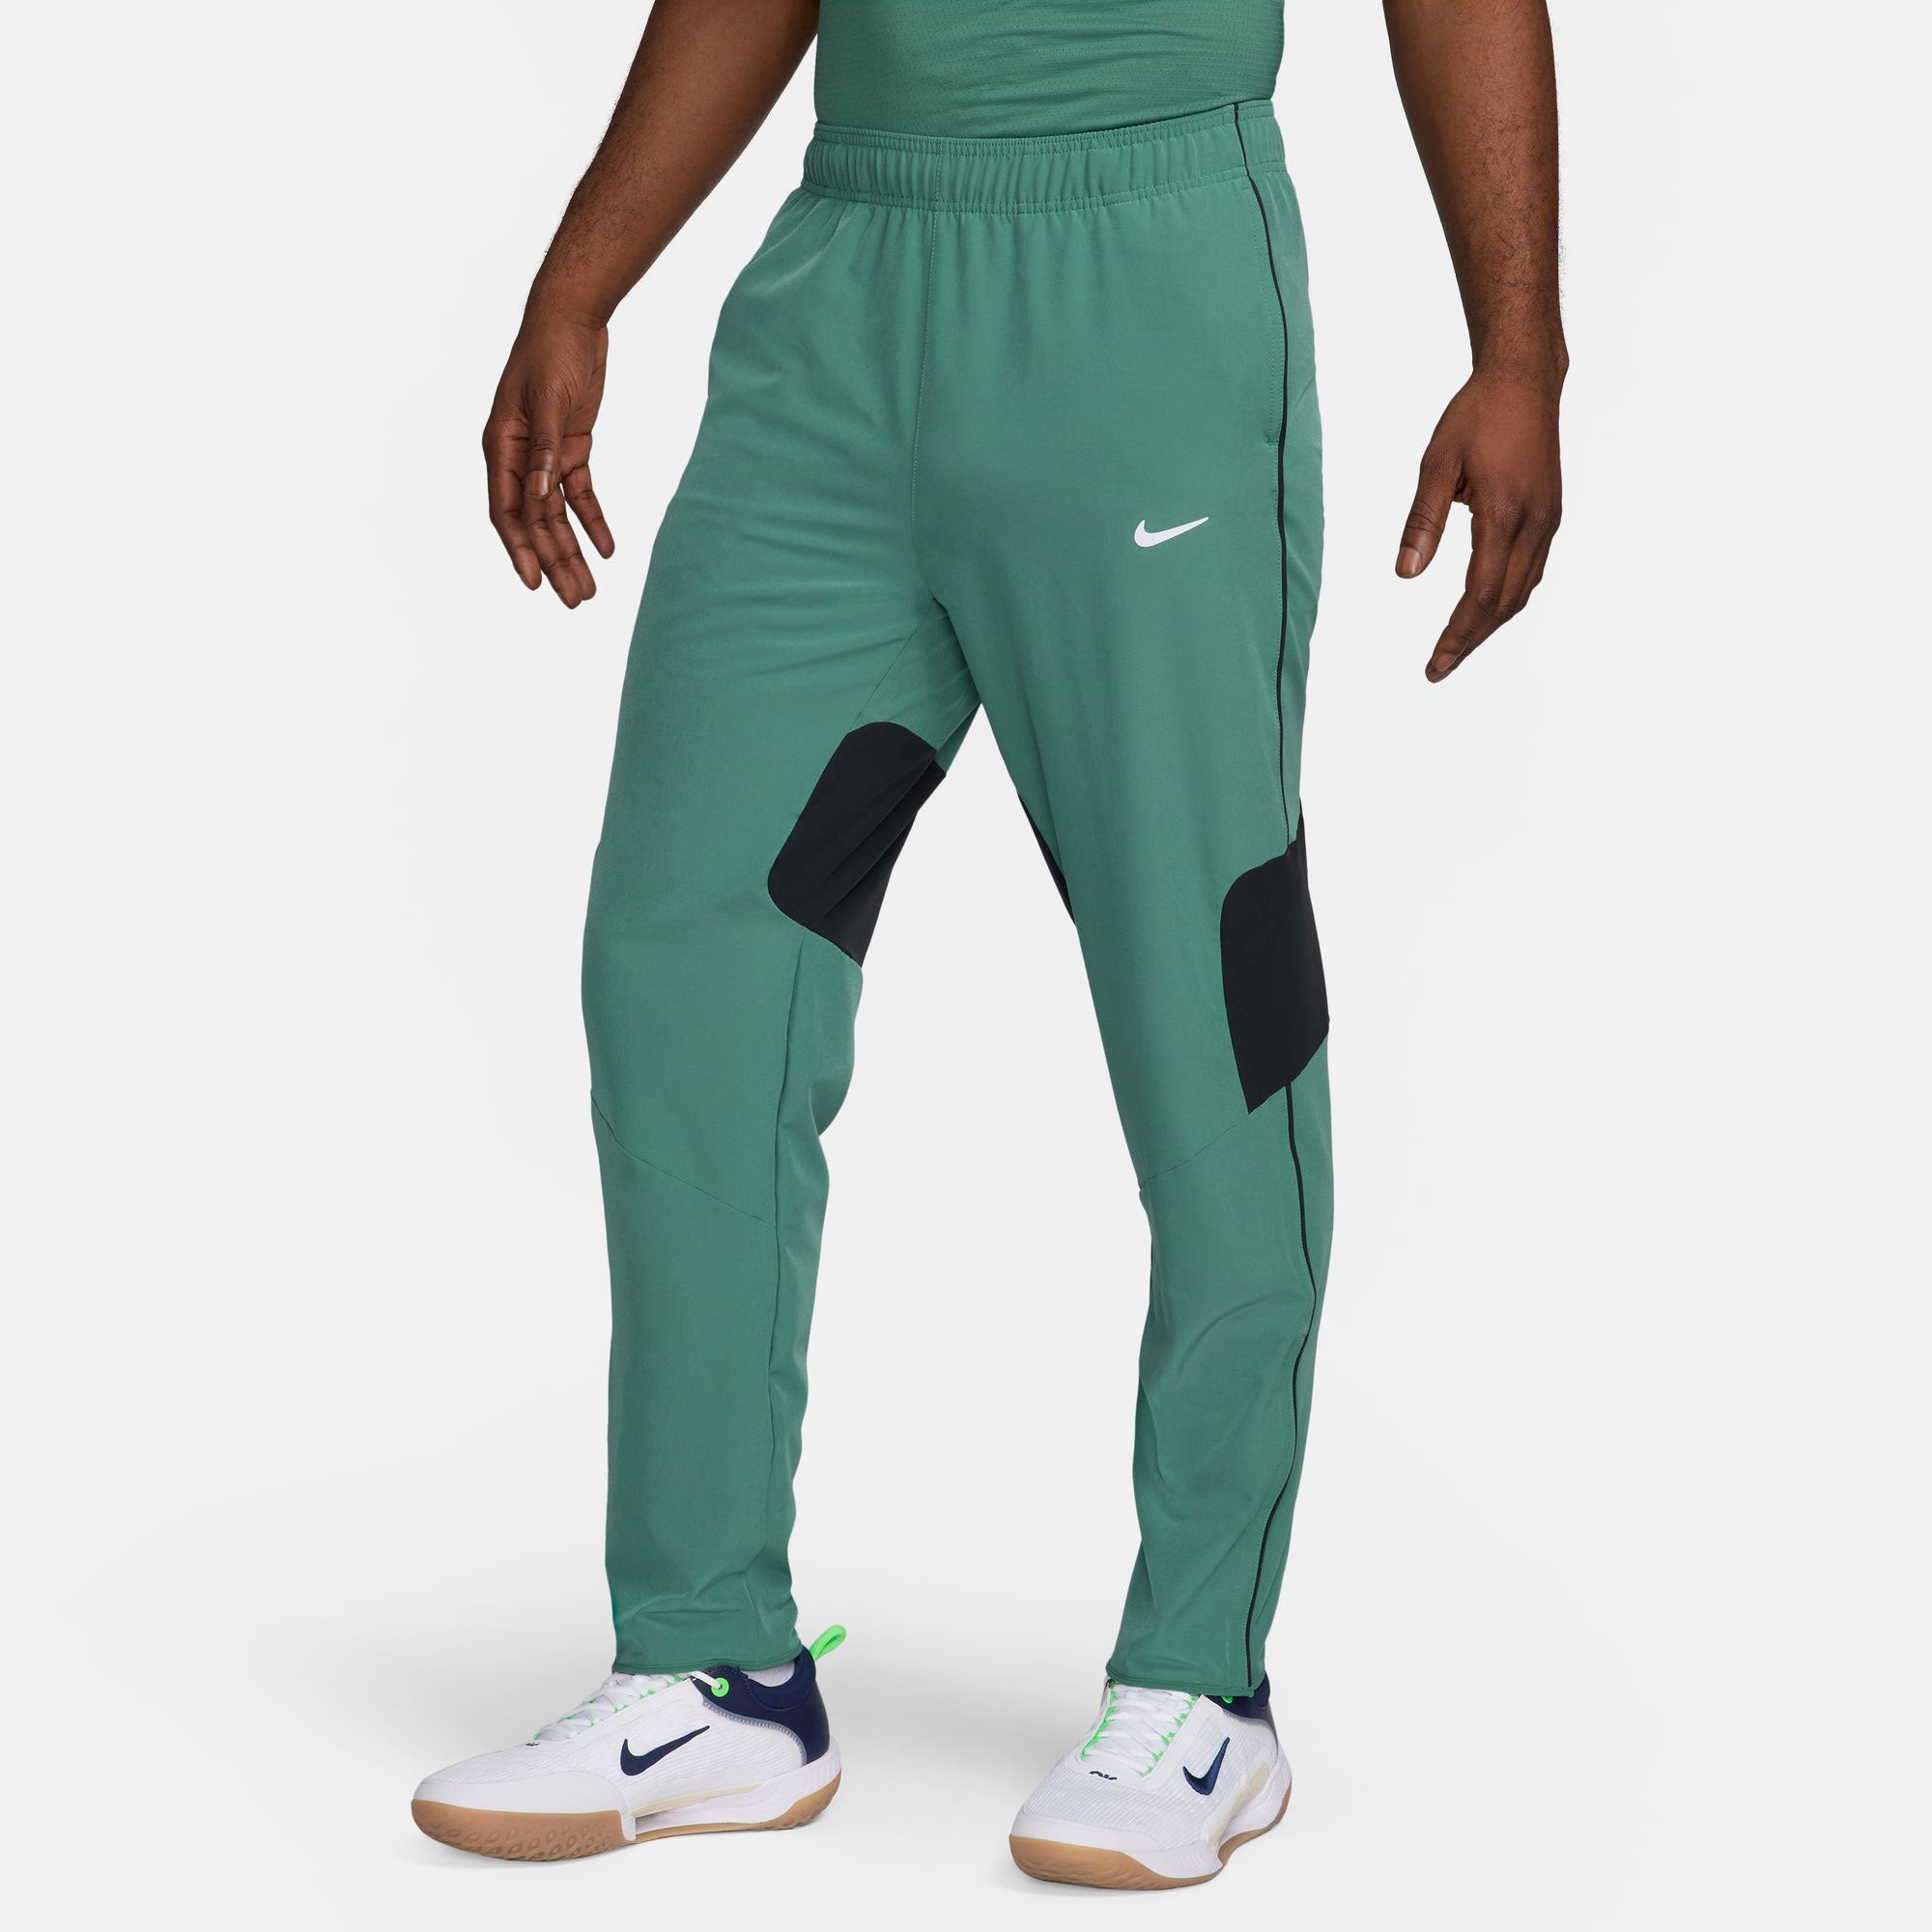 NikeCourt Advantage Men's Dri-FIT Tennis Pants - Green (1)